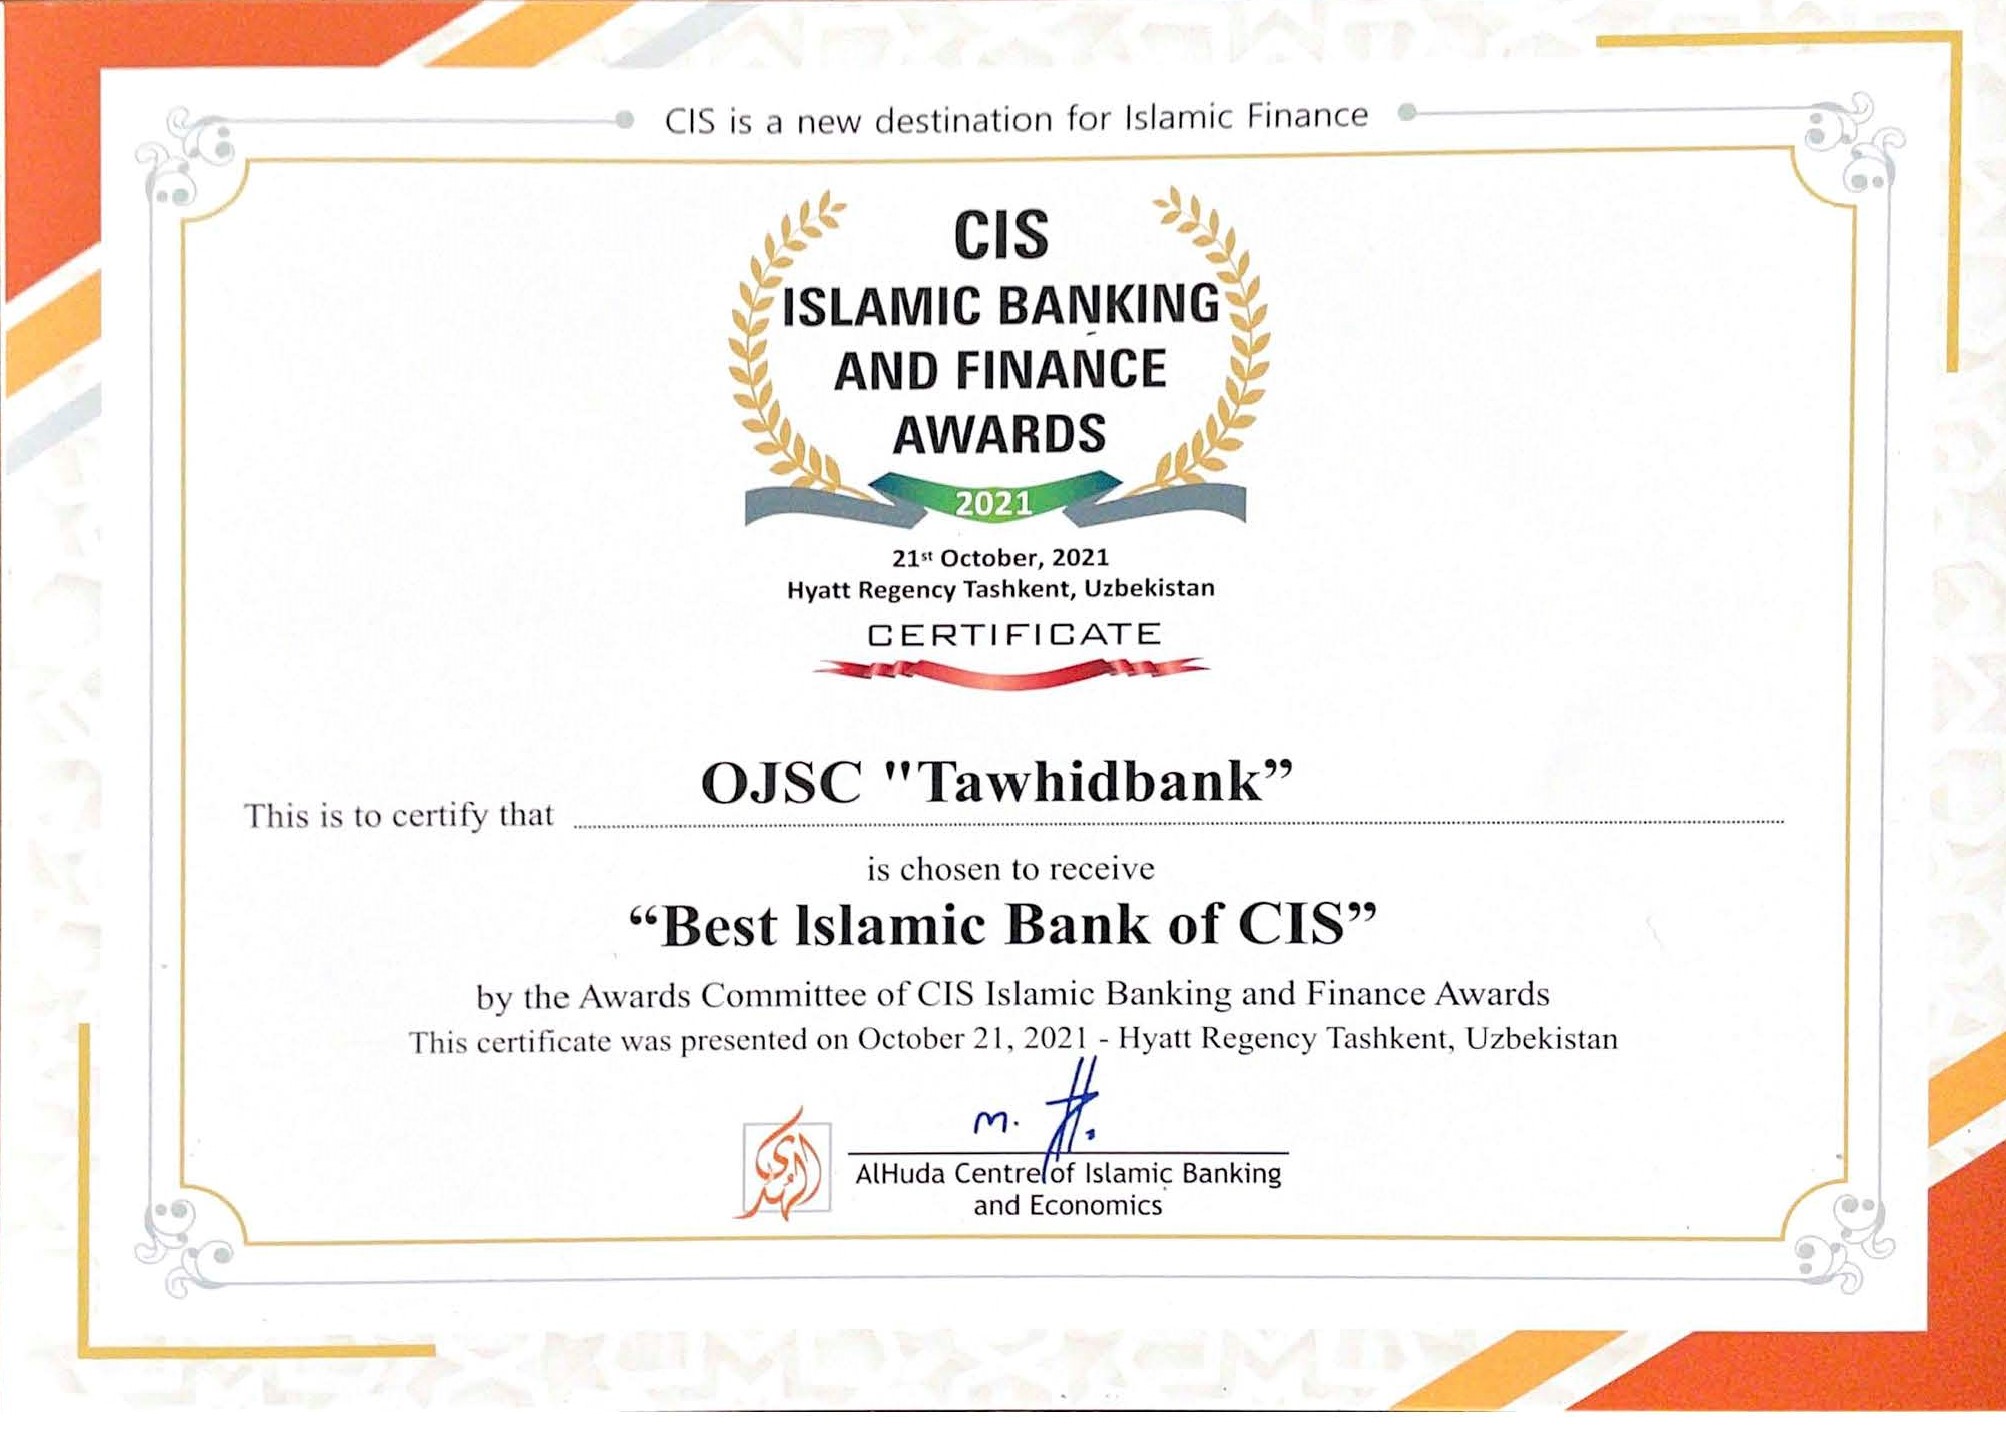 Tawhidbank has great news!